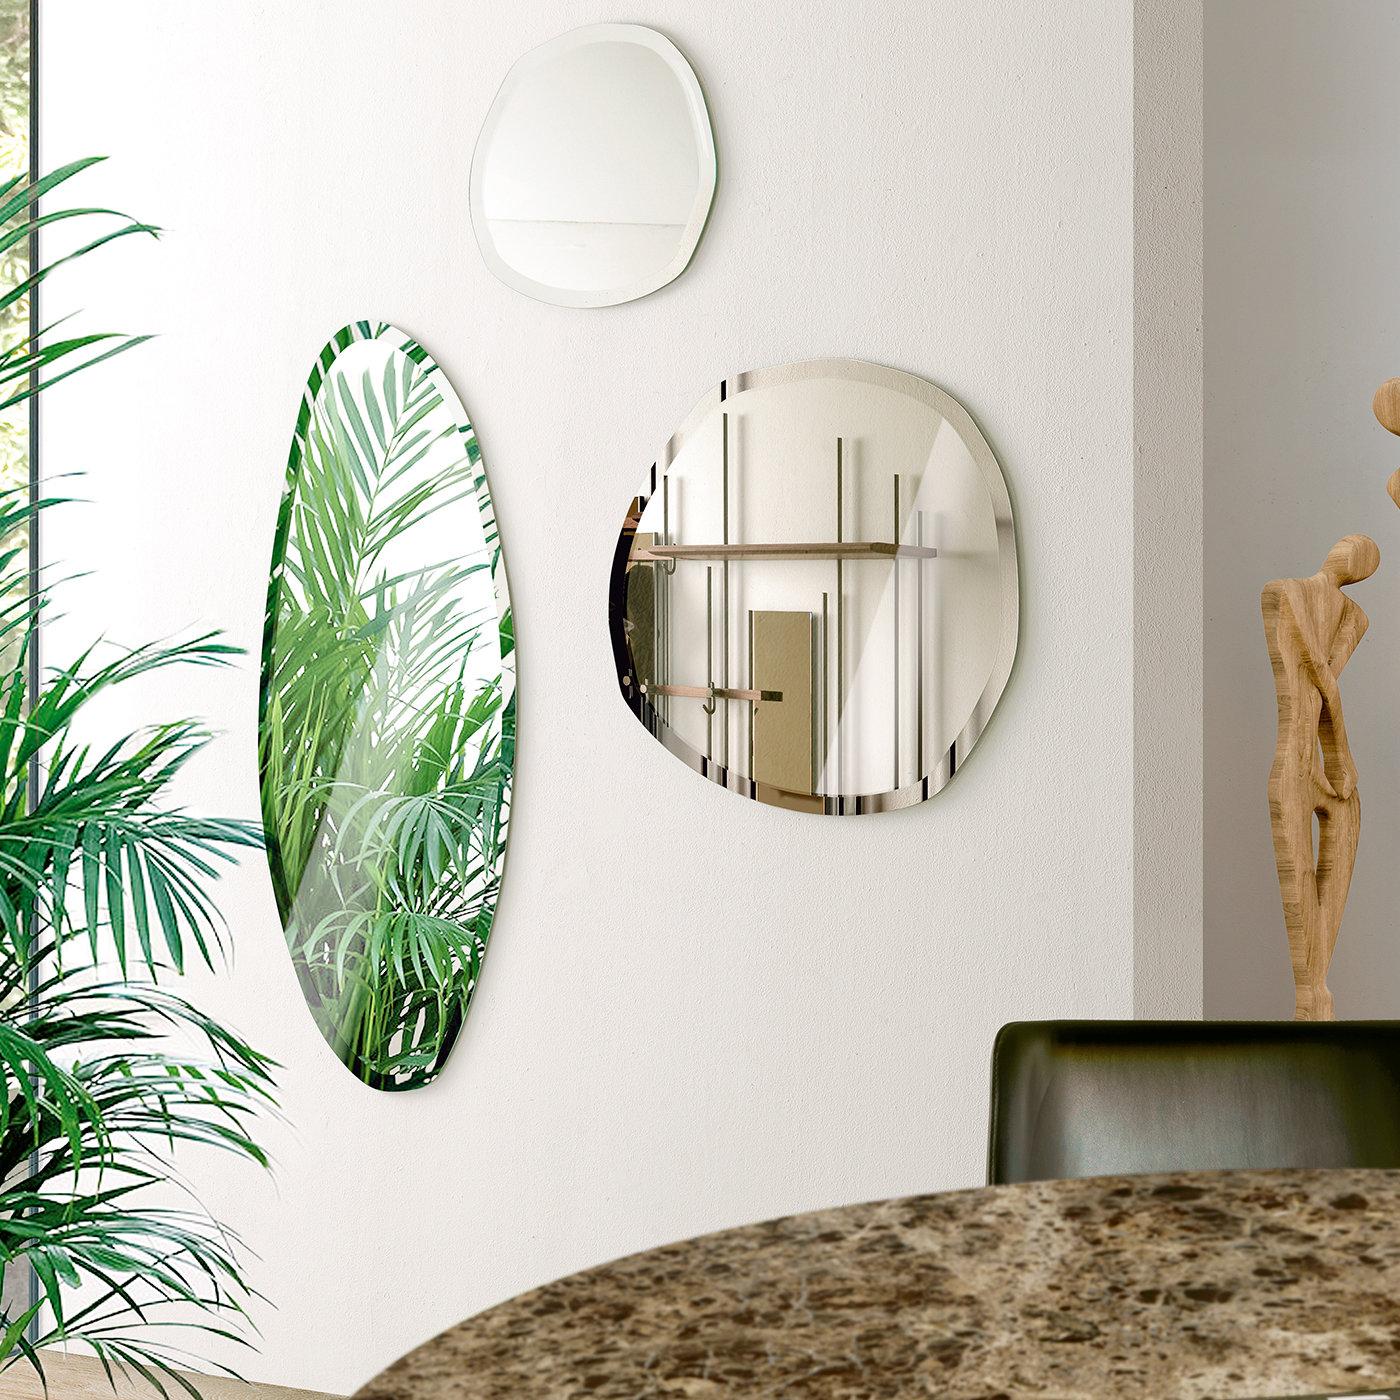 Excentrique et minimaliste, cet élégant miroir mural rond de Norberto Delfinetti sera un captivant objet de décoration fonctionnel dans un intérieur contemporain. Caractérisé par des bords biseautés qui évoquent les formes irrégulières et charmantes